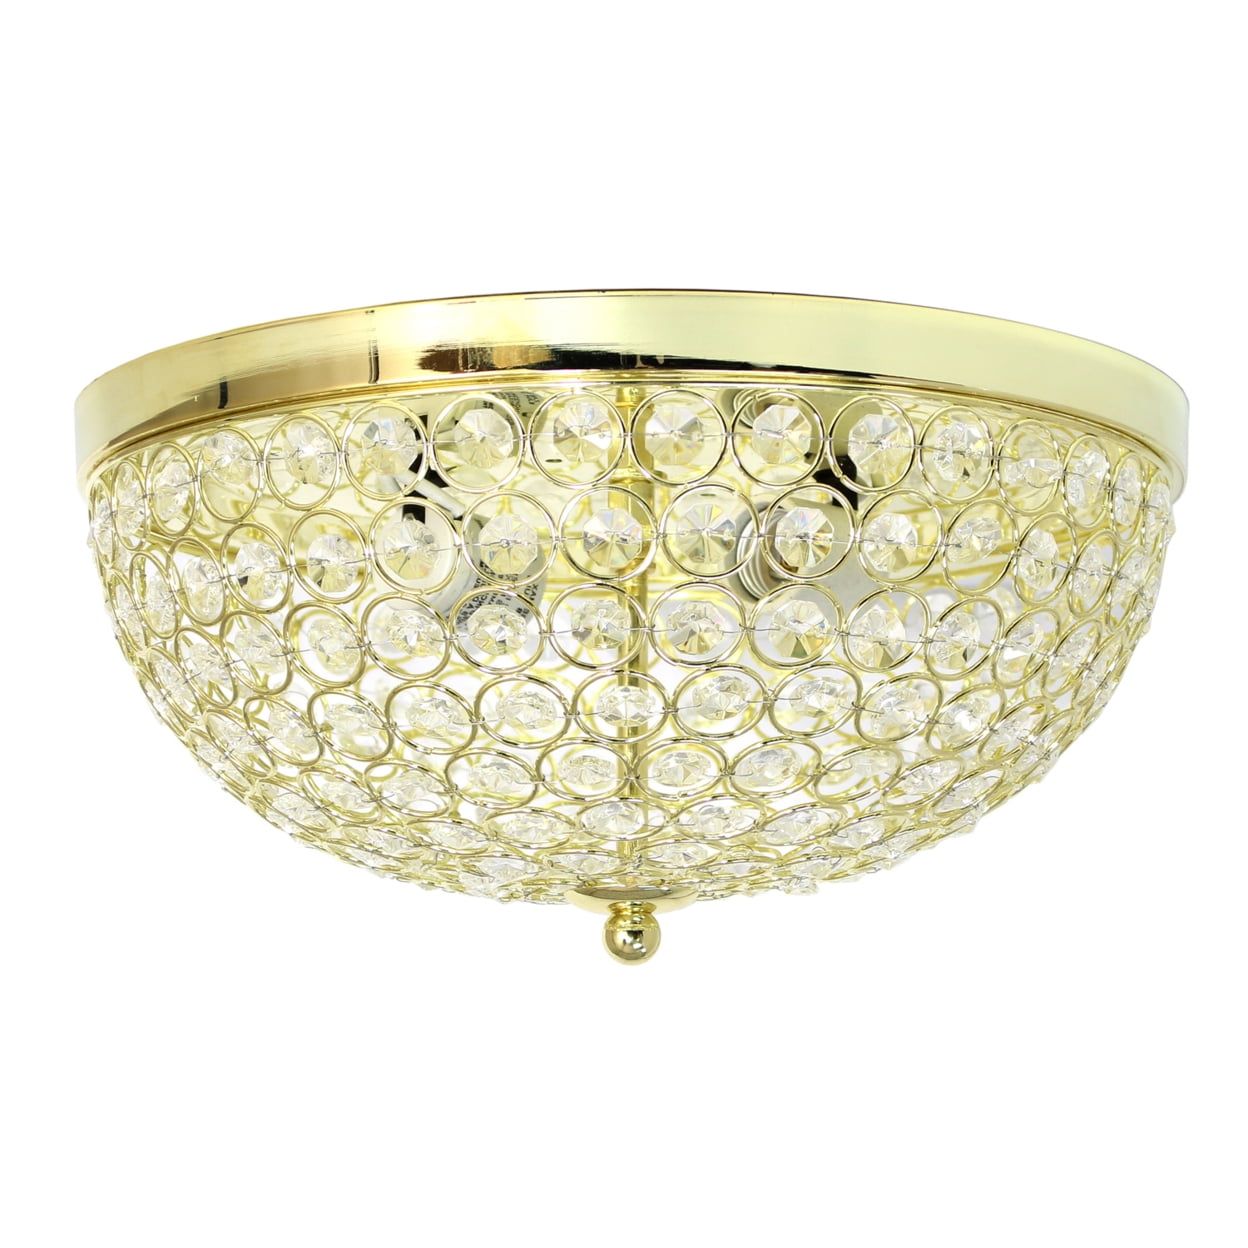 Elegant Designs Fm1000-gld 2 Elipse Crystal Flush Mount Ceiling Light - Gold